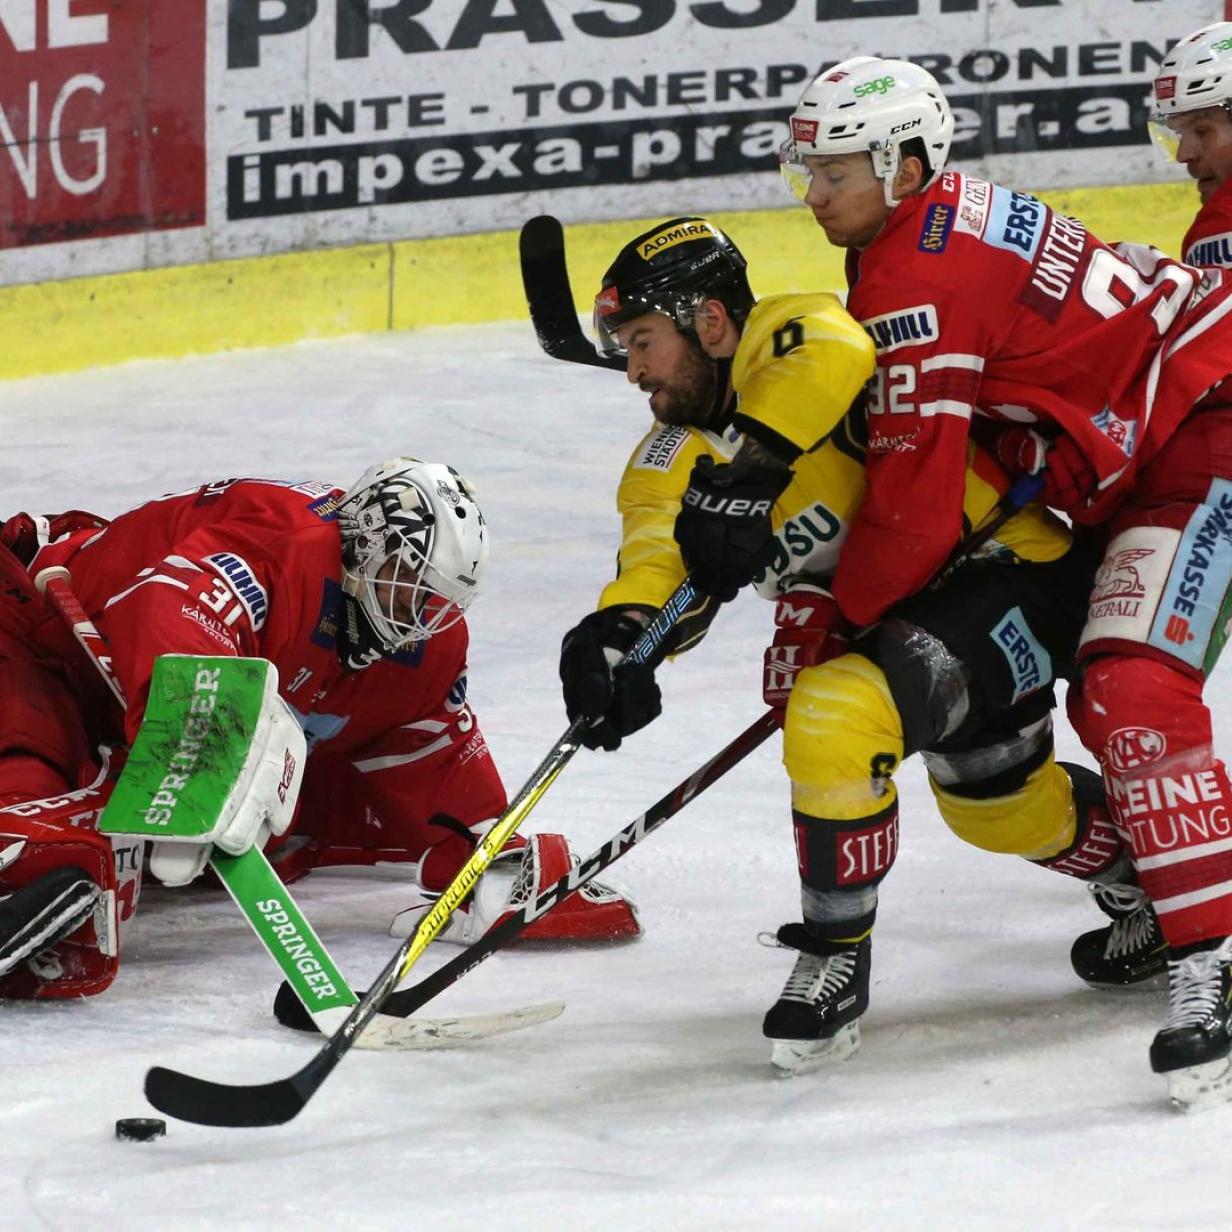 Puls 24 zeigt bis zu 45 Spiele der neuen Eishockey-Liga kurier.at